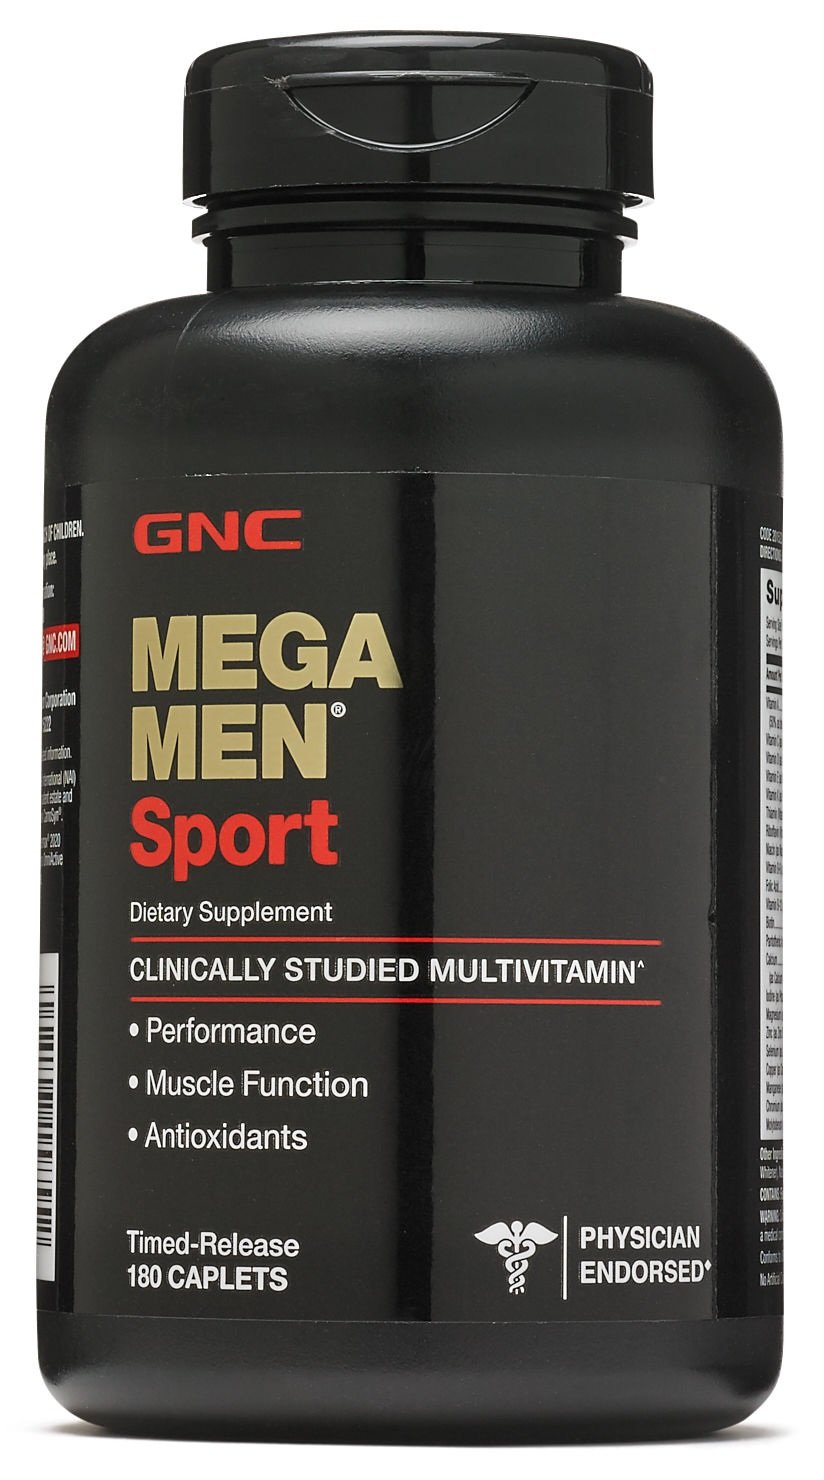 Витамины и минералы GNC Mega Men Sport, 180 каплет,  мл, GNC. Витамины и минералы. Поддержание здоровья Укрепление иммунитета 